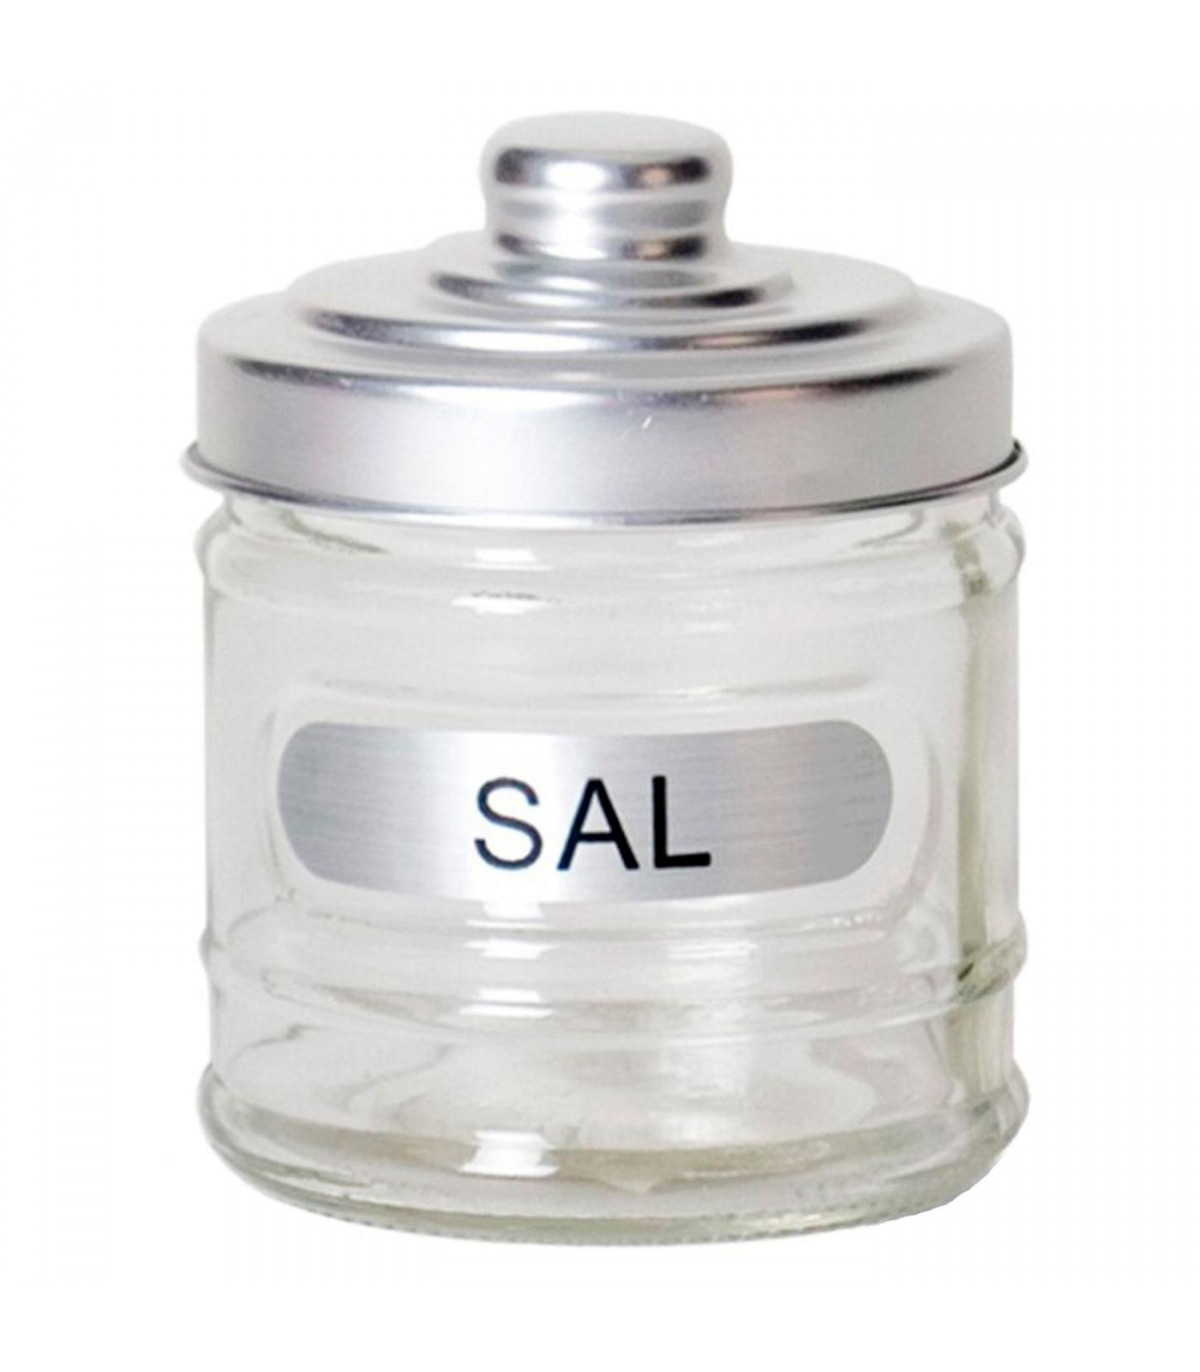 Gerimport - Salero de con tapa de 280 ml. Salero, recipiente para sal, azúcar, especias, condimentos, cocina